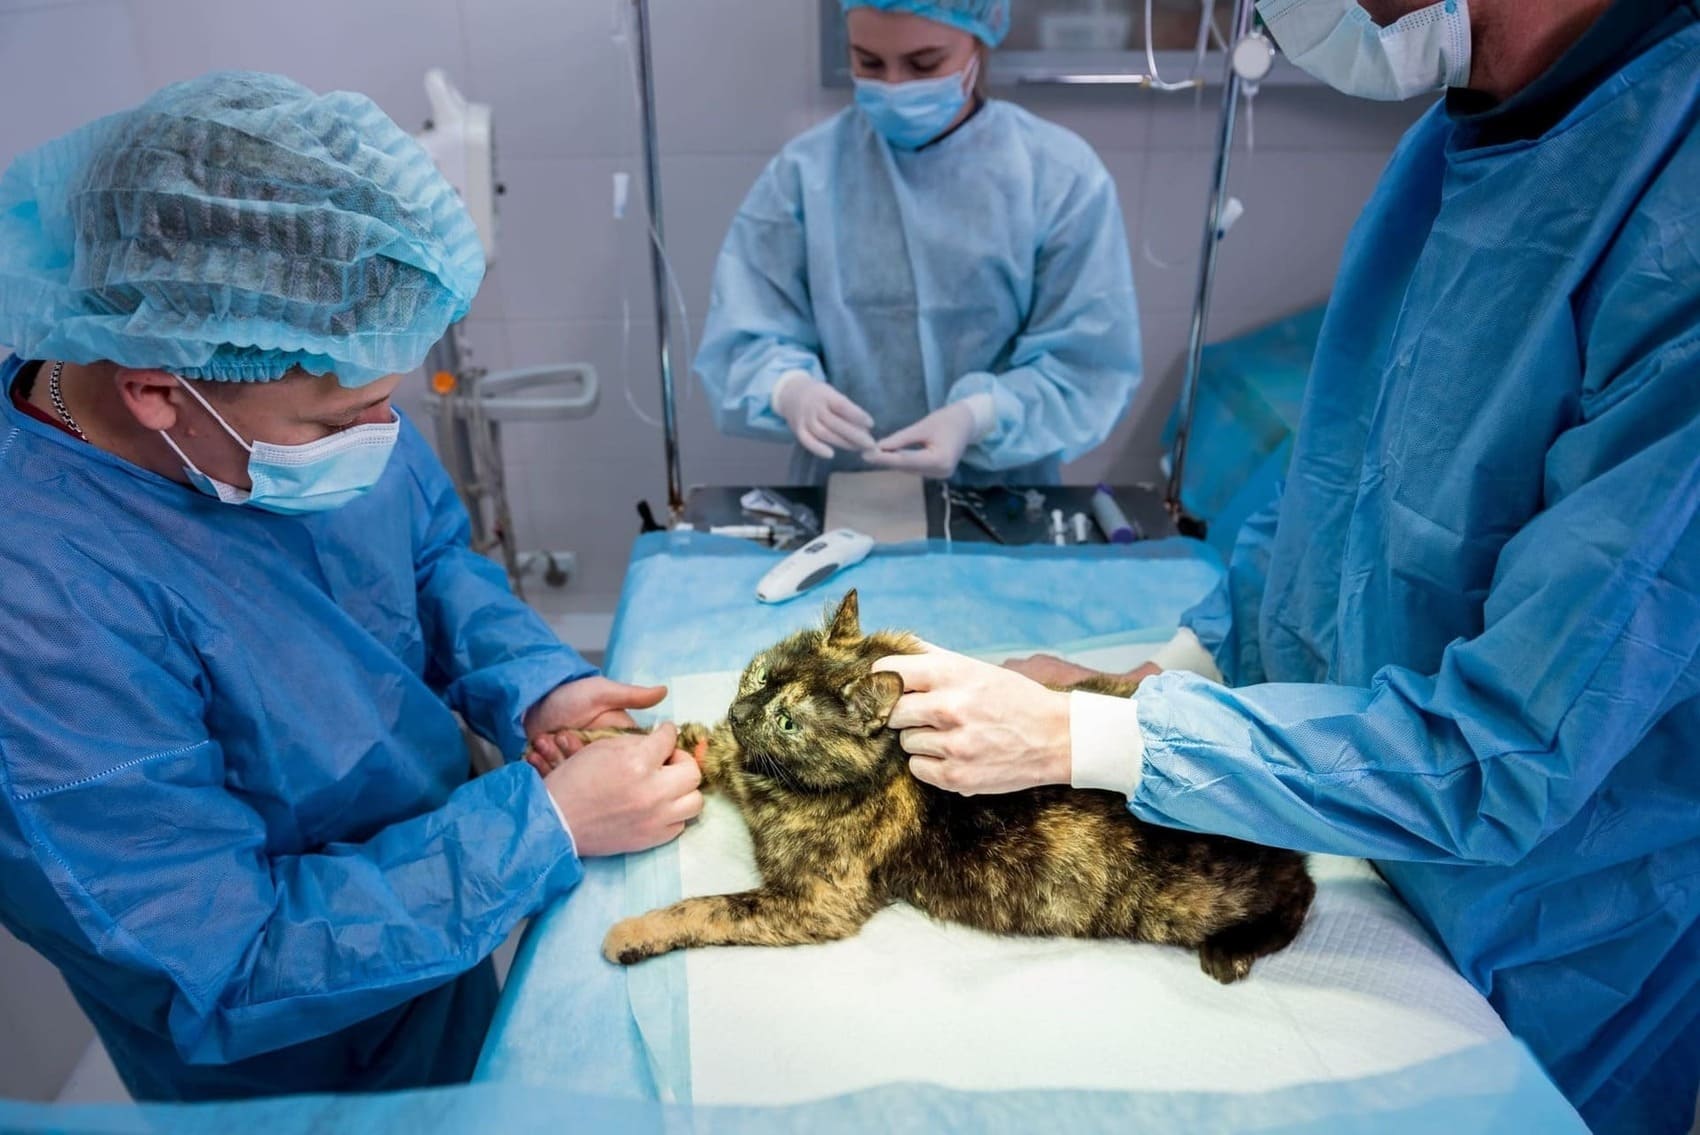 Pet Surgery